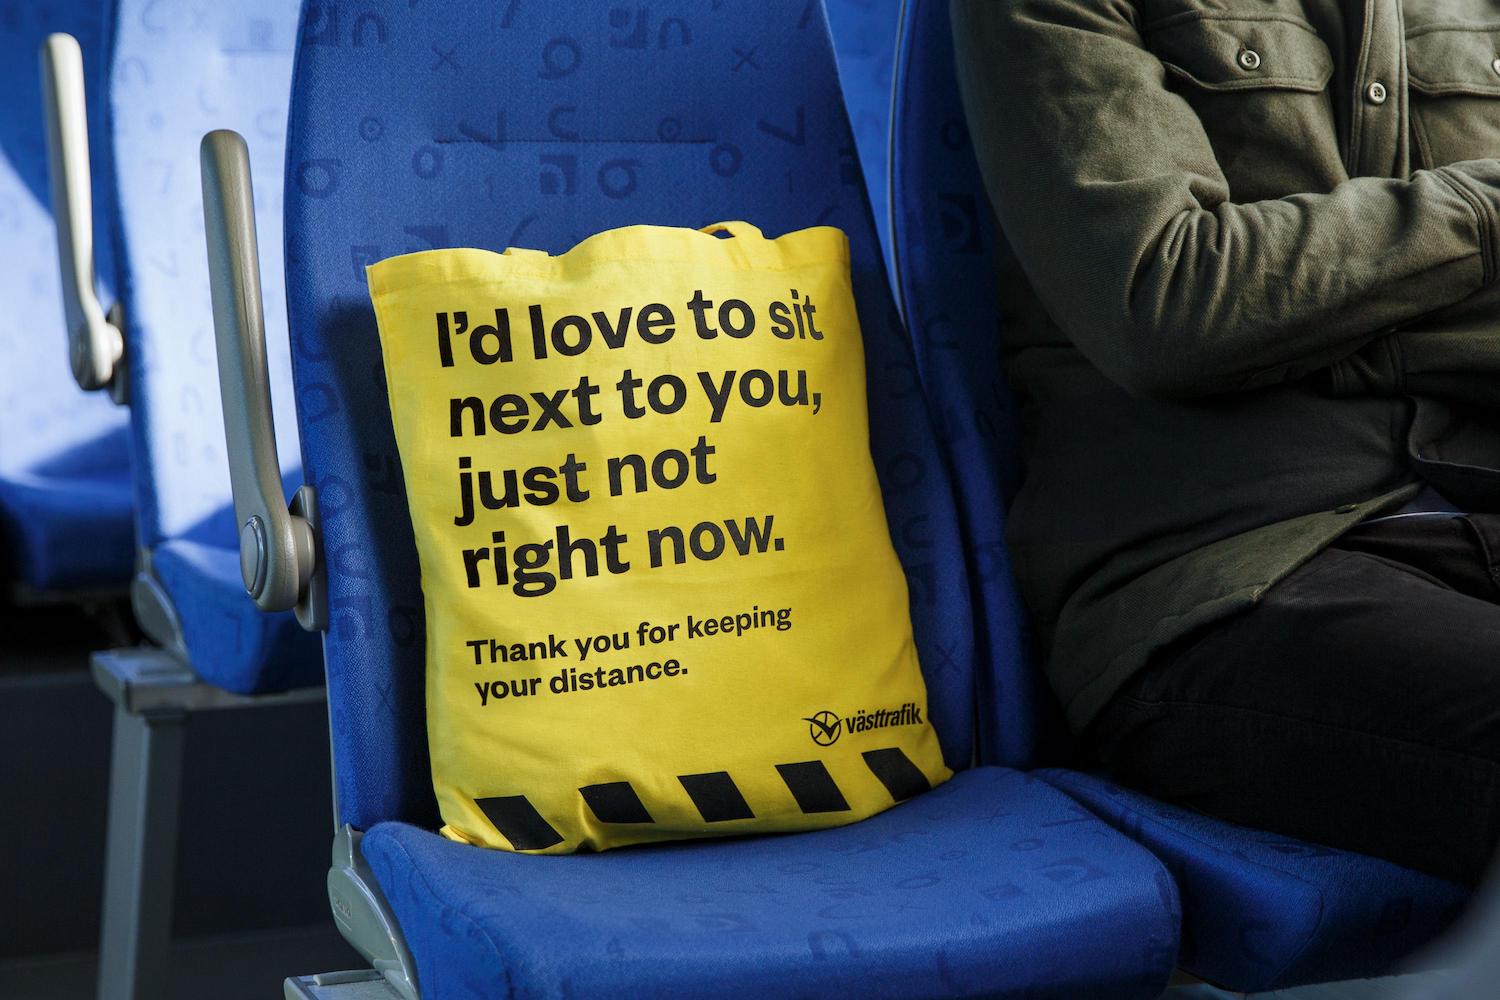 La "RATP suédoise" distribue des sacs pour maintenir les distances de sécurité